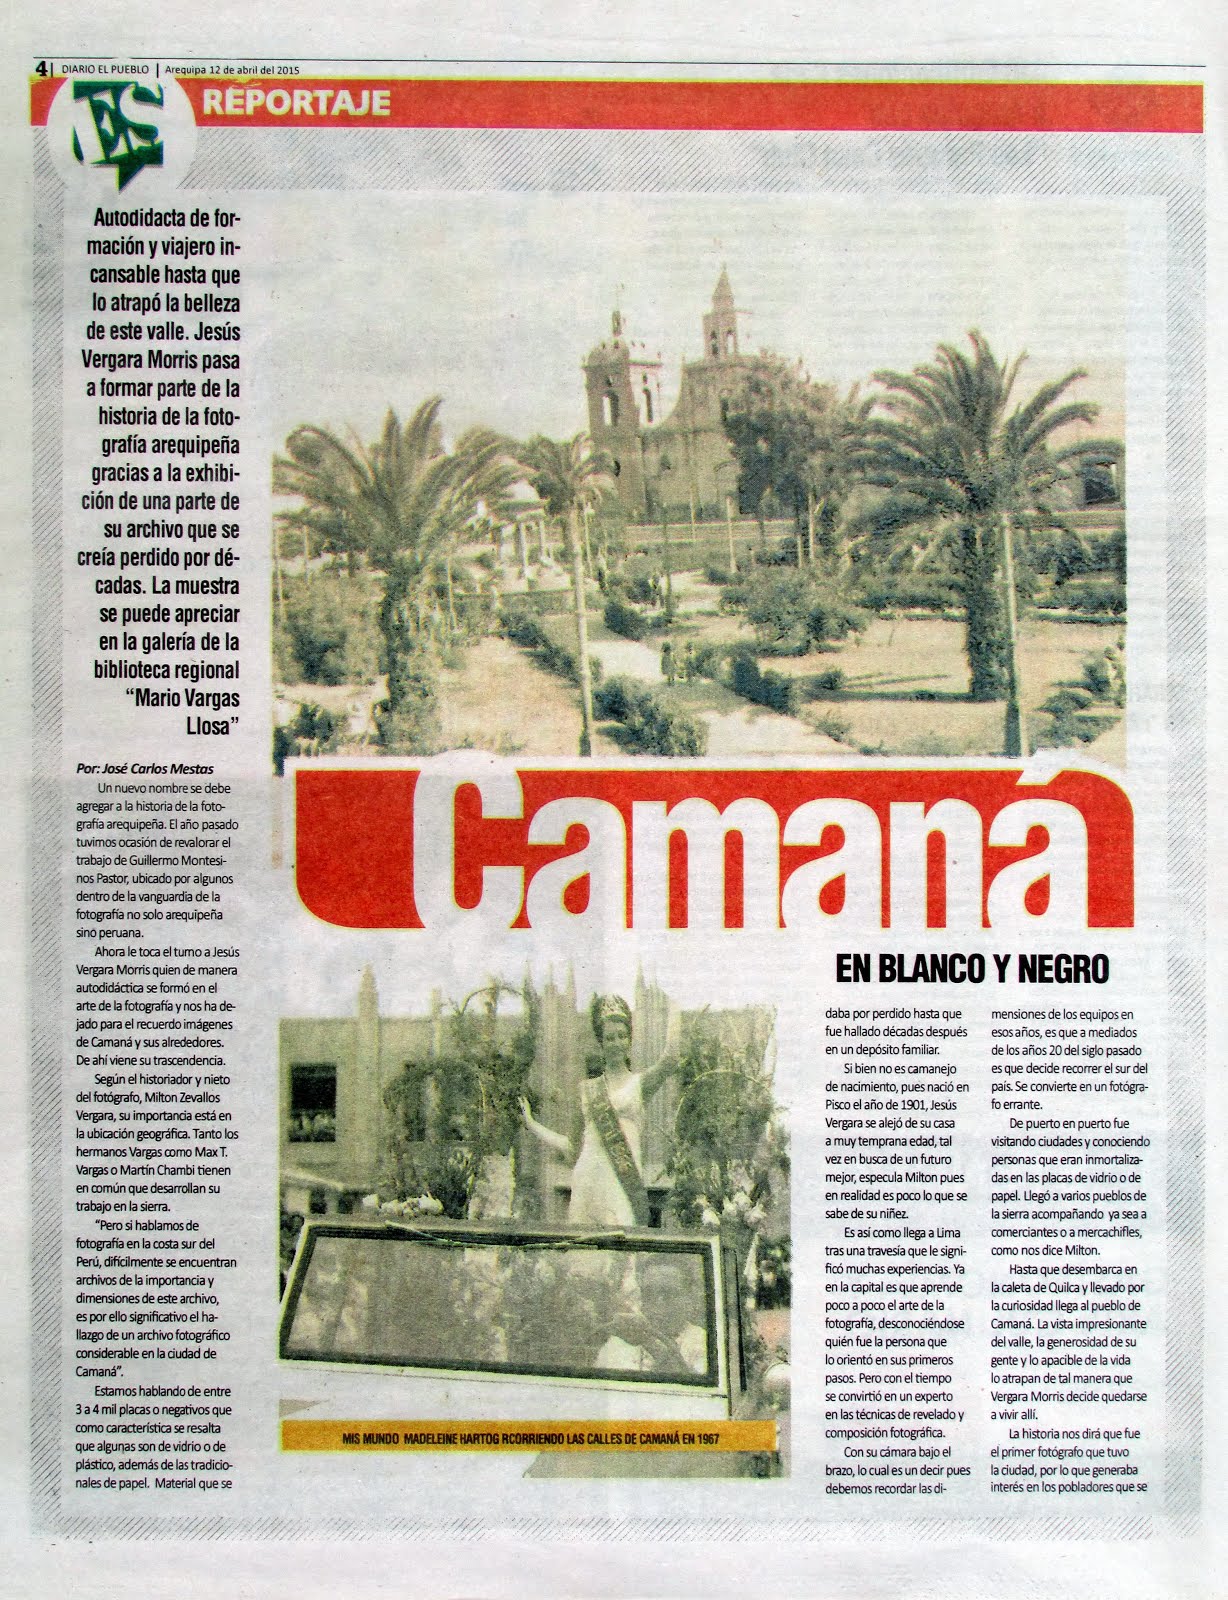 Diario El Pueblo, Suplemento Dominical. 12 de abril 2015 - 02